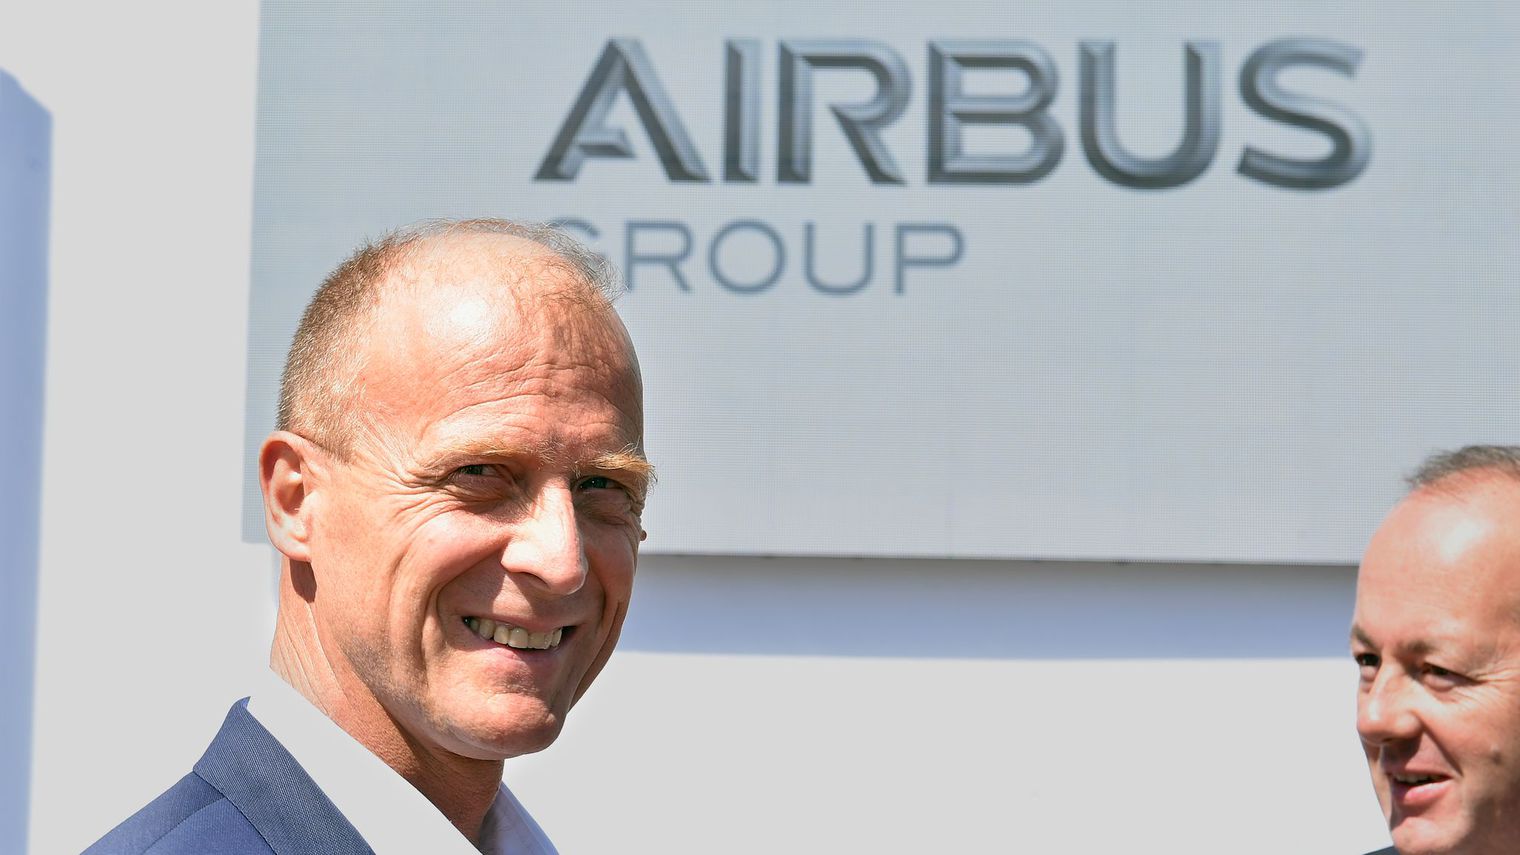 PDG du groupe Airbus, Tom Enders